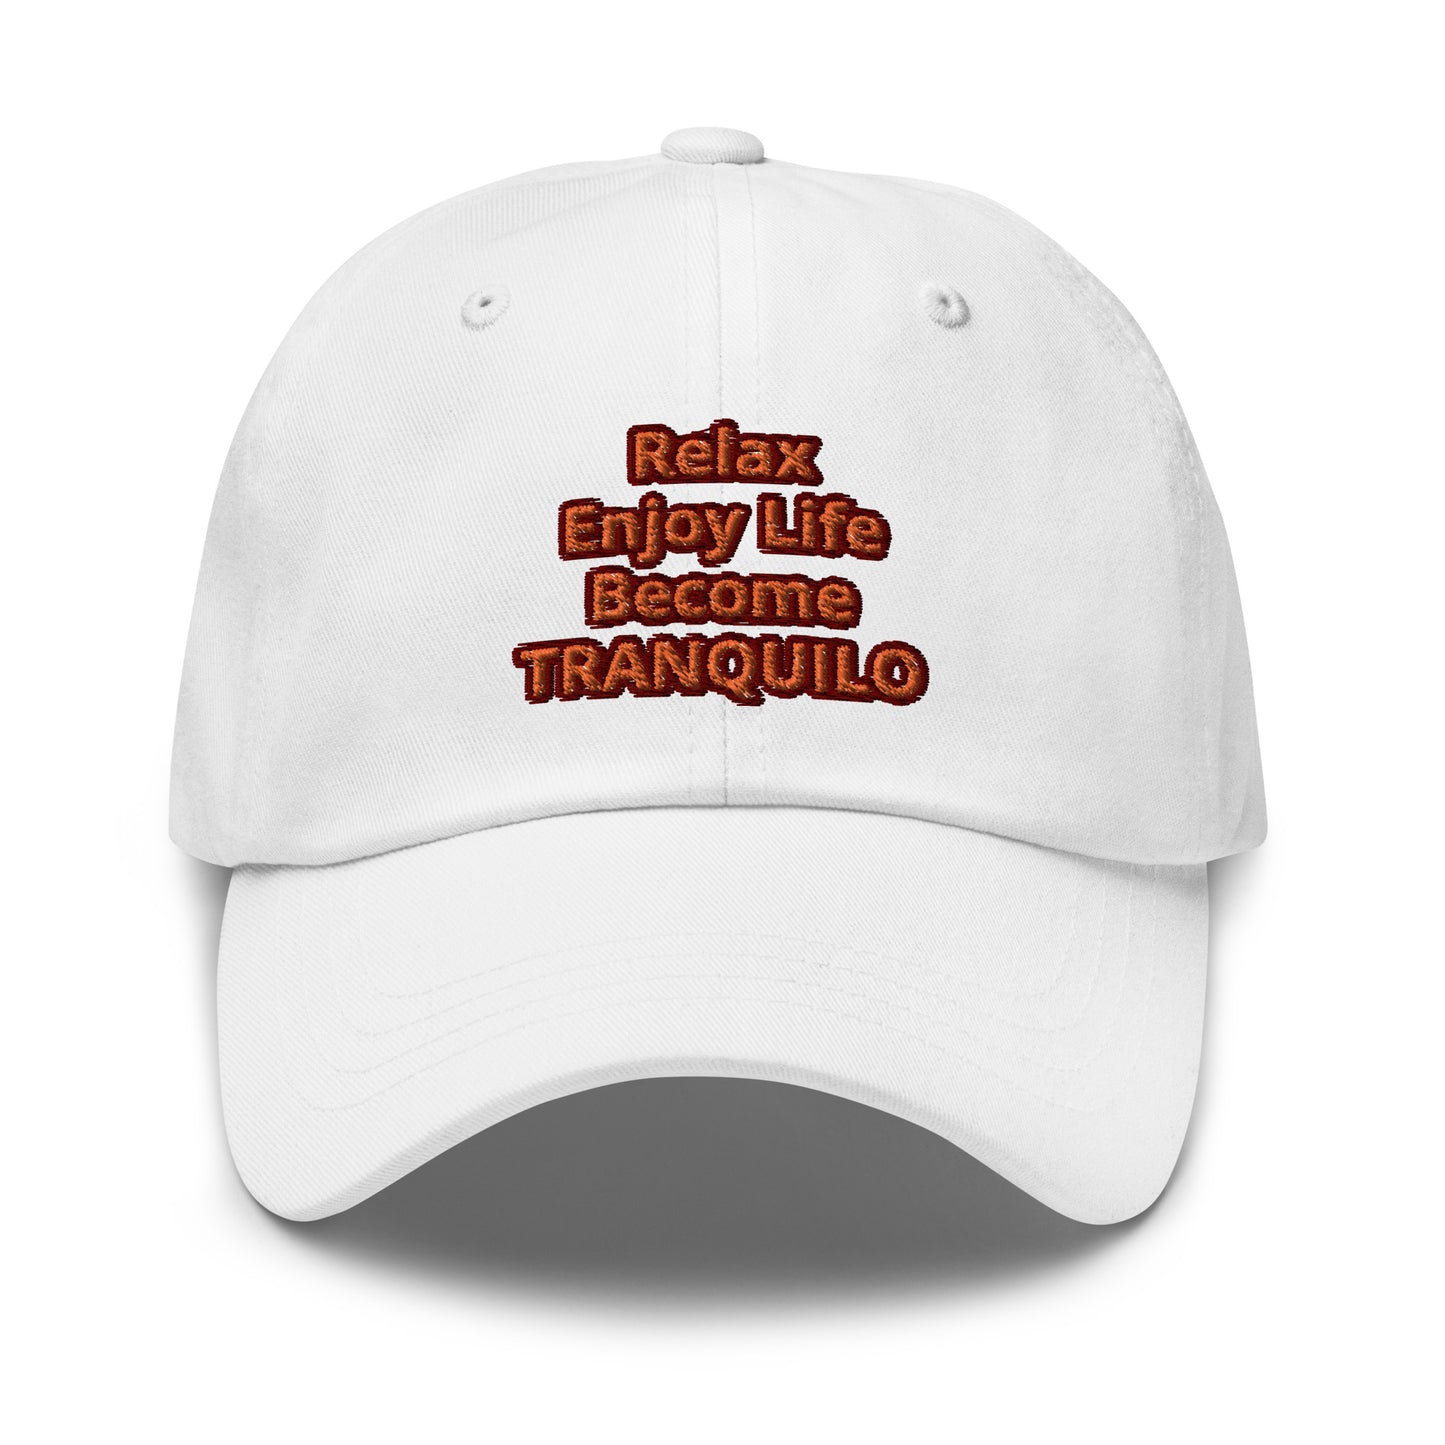 TRANQUILO Motto Dad hat